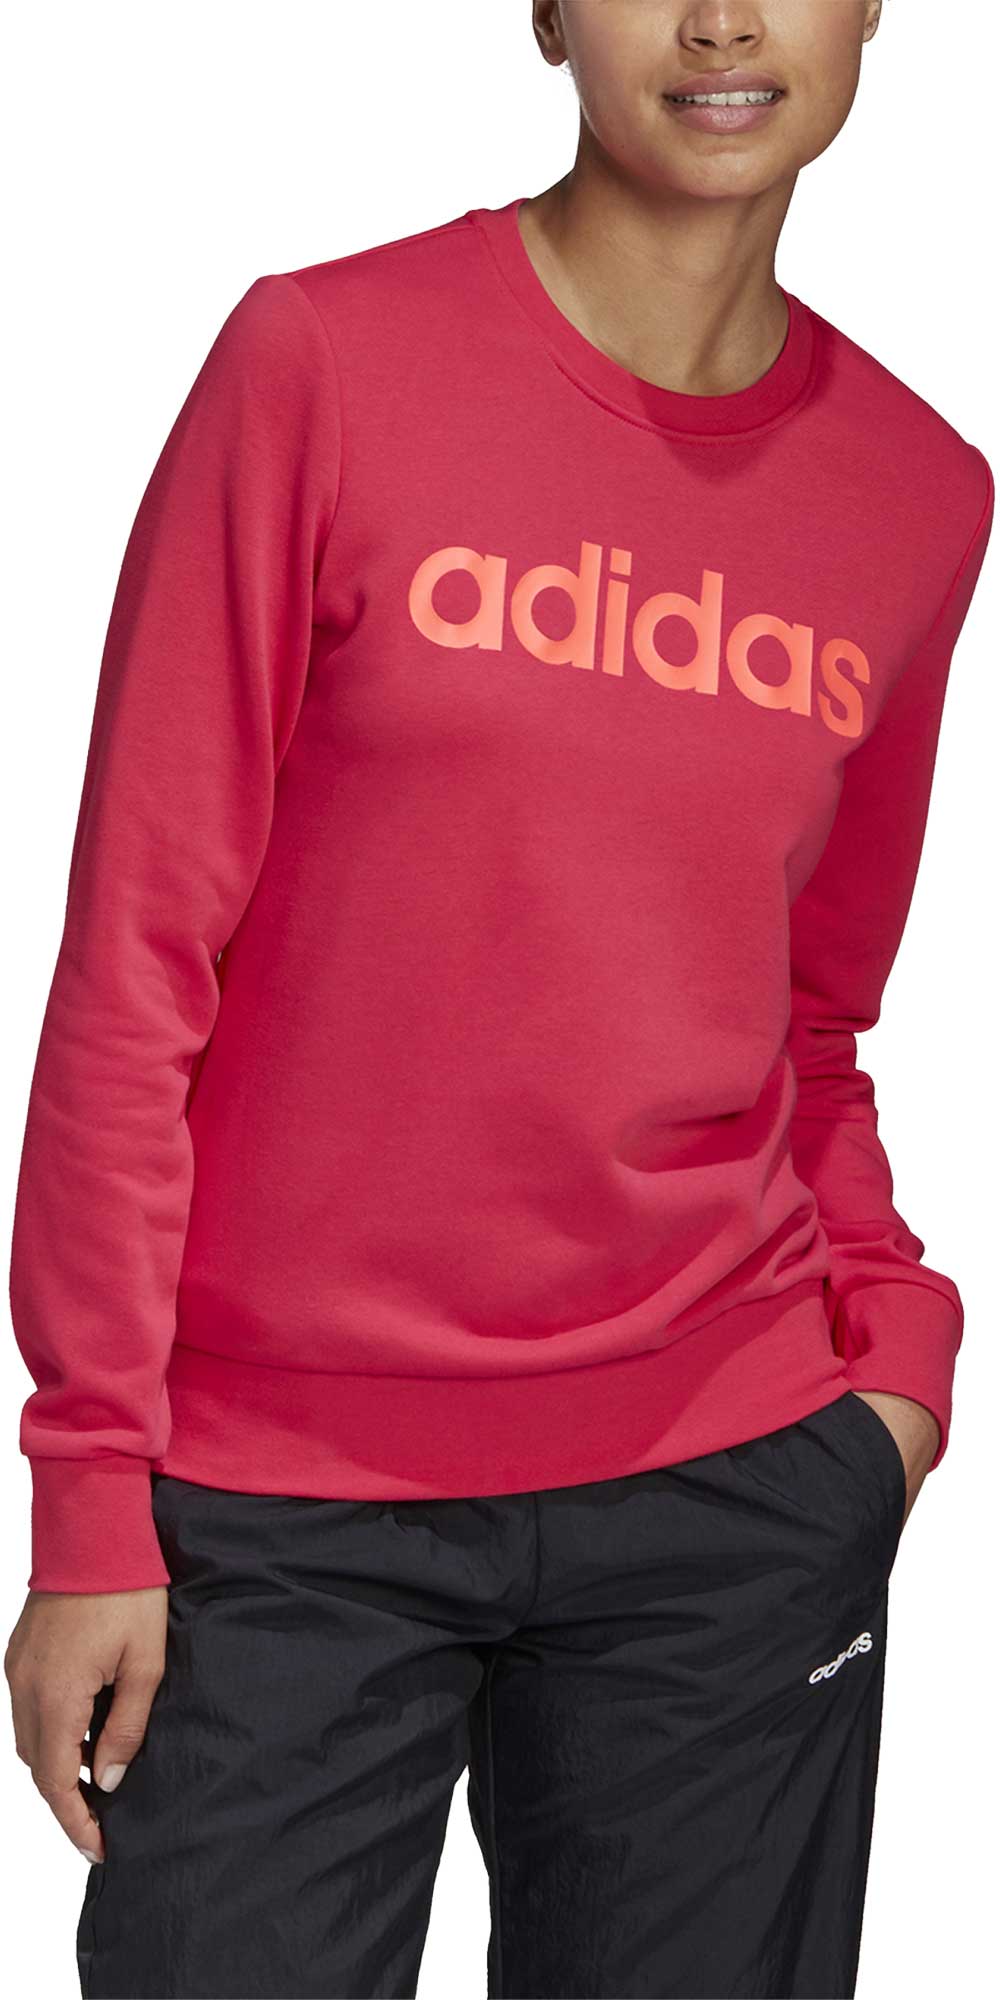 Women's sweatshirt